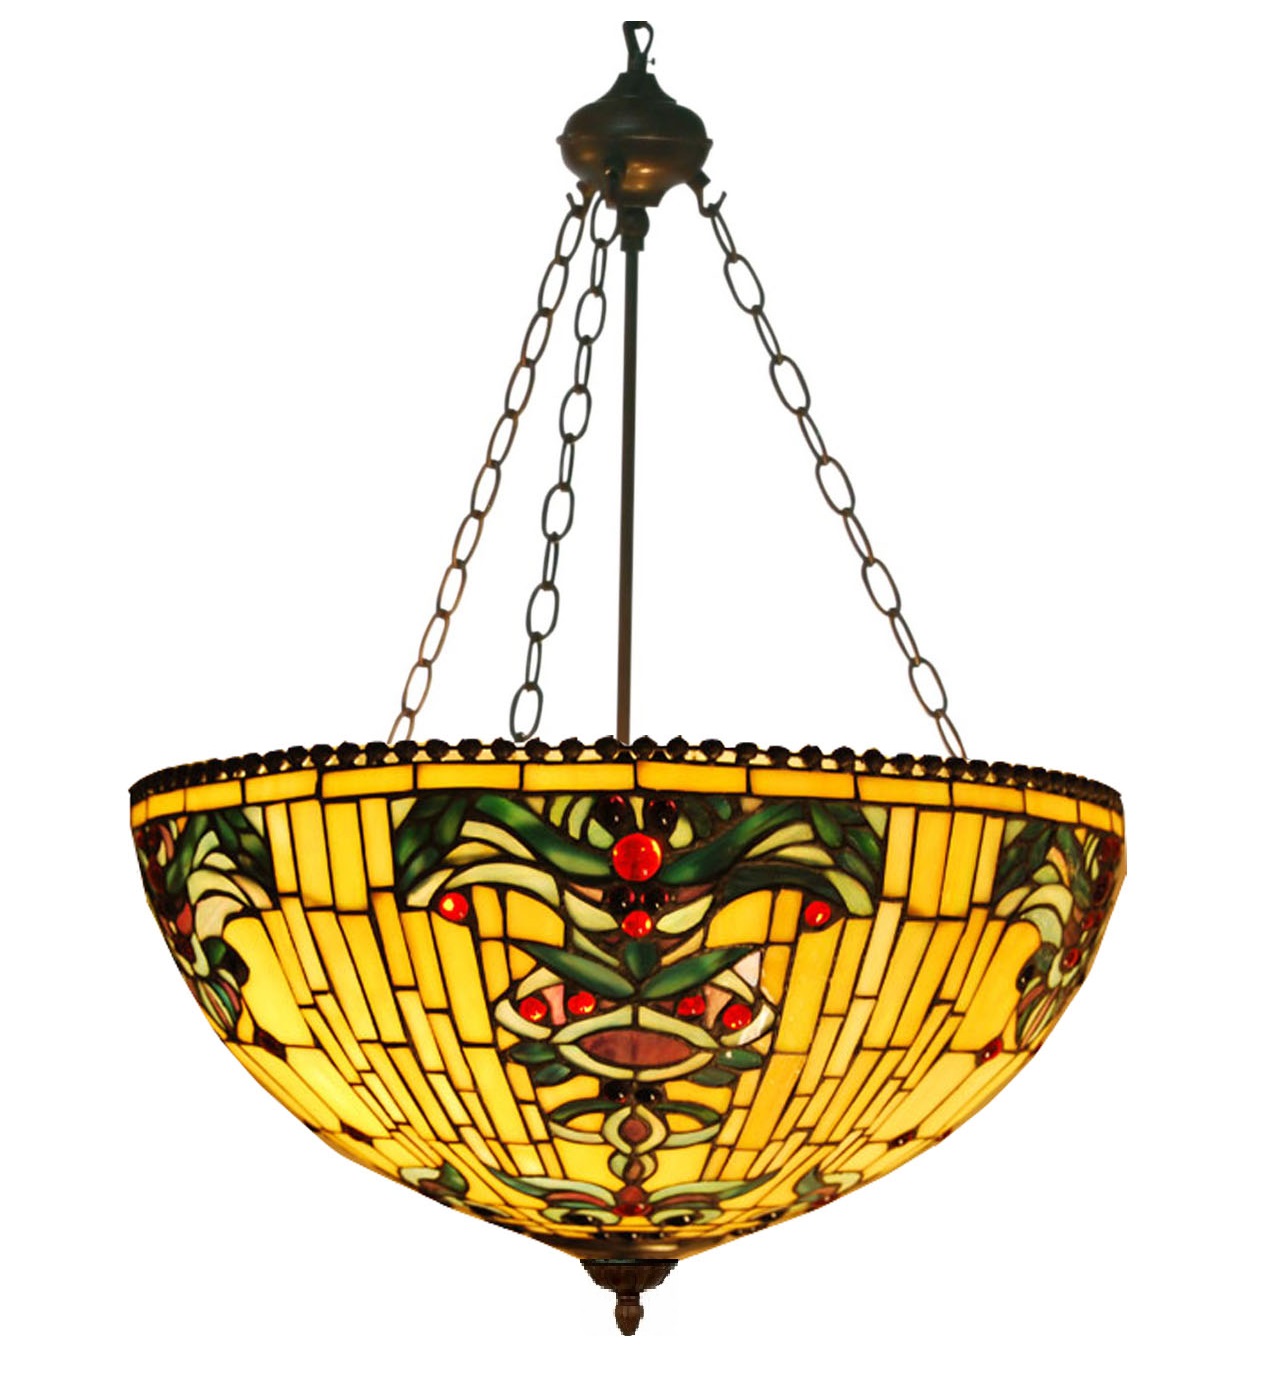 Tiffany hanglamp Oklahoma 50 / 8834